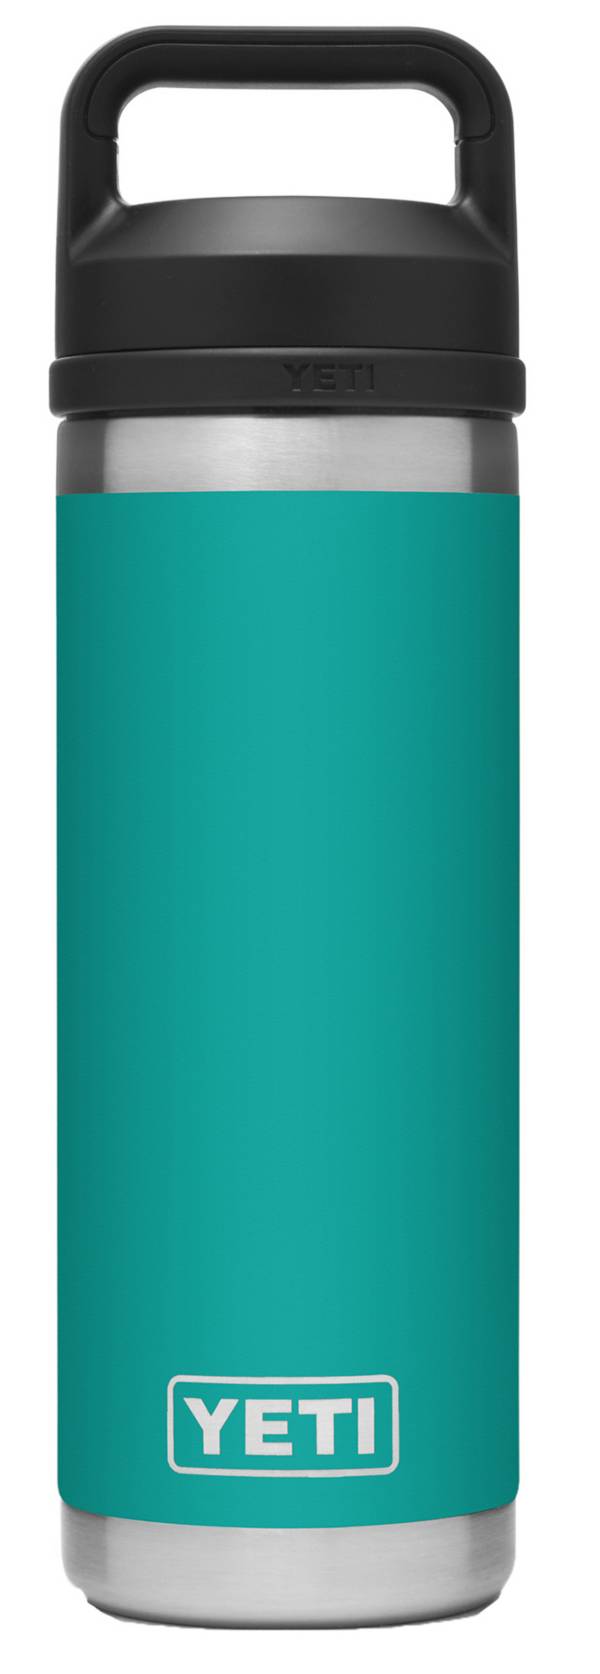 YETI 18 oz. Rambler Bottle with Chug Cap product image